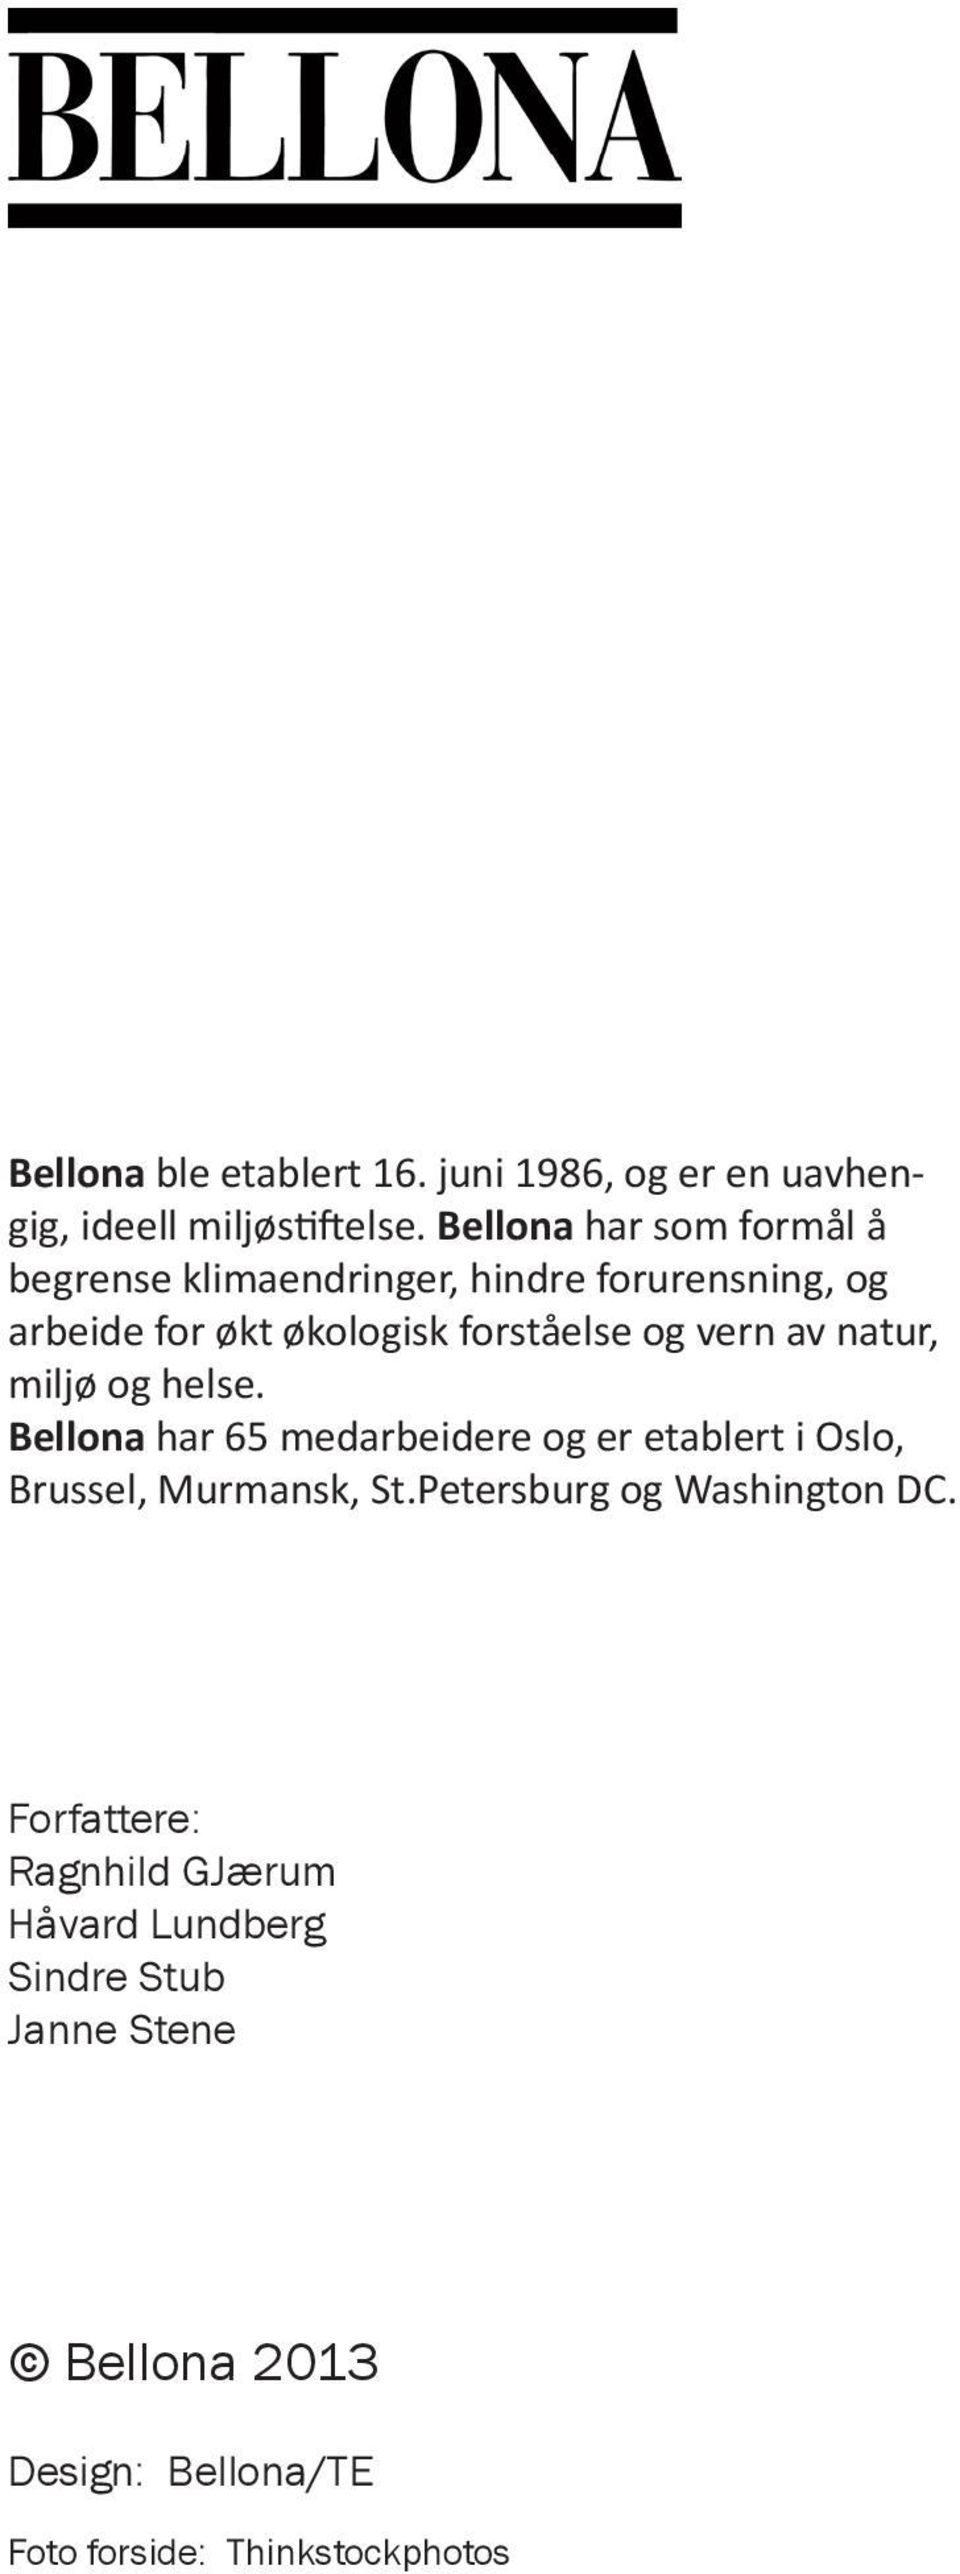 og vn av natur, miljø og helse. Bellona har 65 medarbeide og etablt i Oslo, Brussel, Murmansk, St.